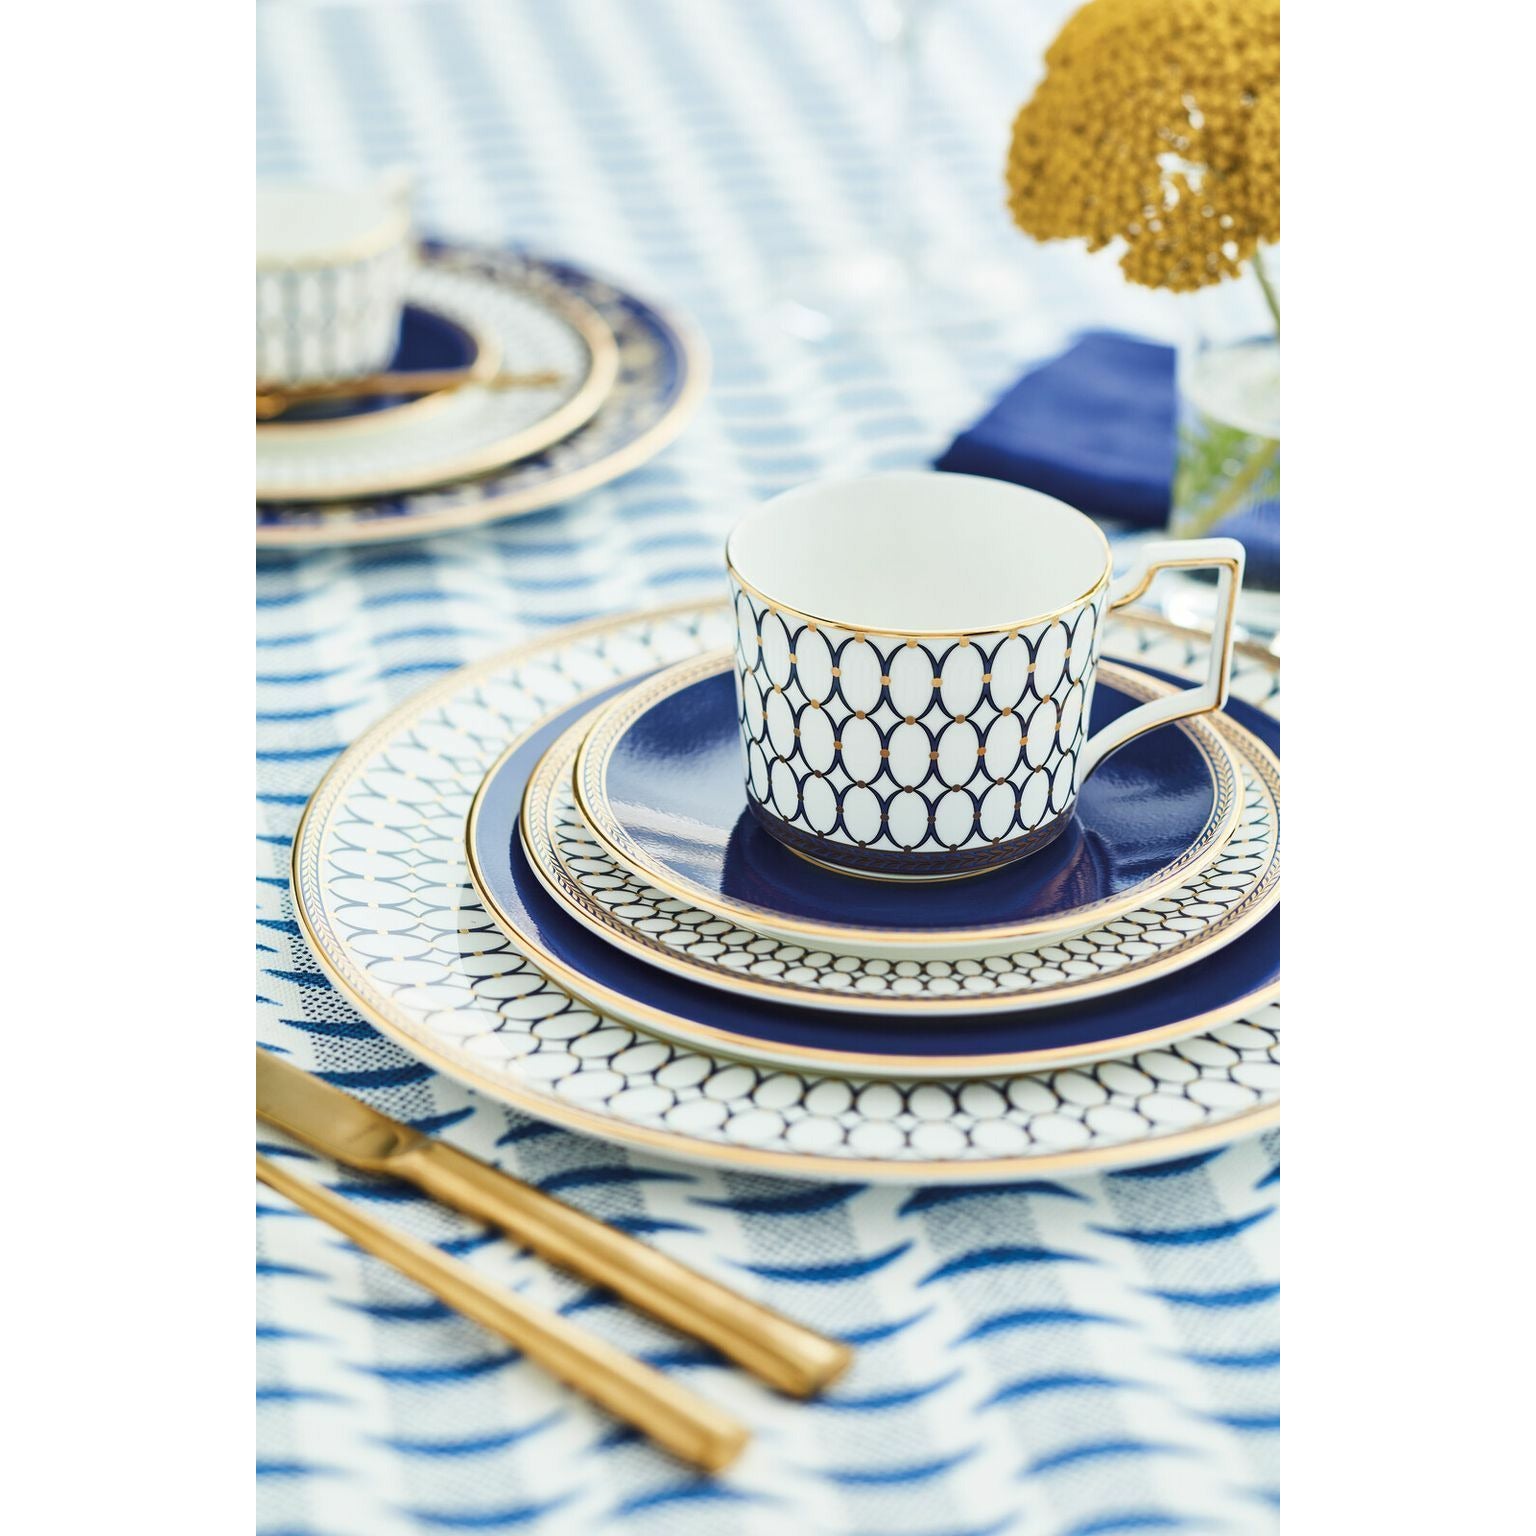 Wedgwood Renaissance Gold Teacup & Saucer 2 Pcs., White/Blue